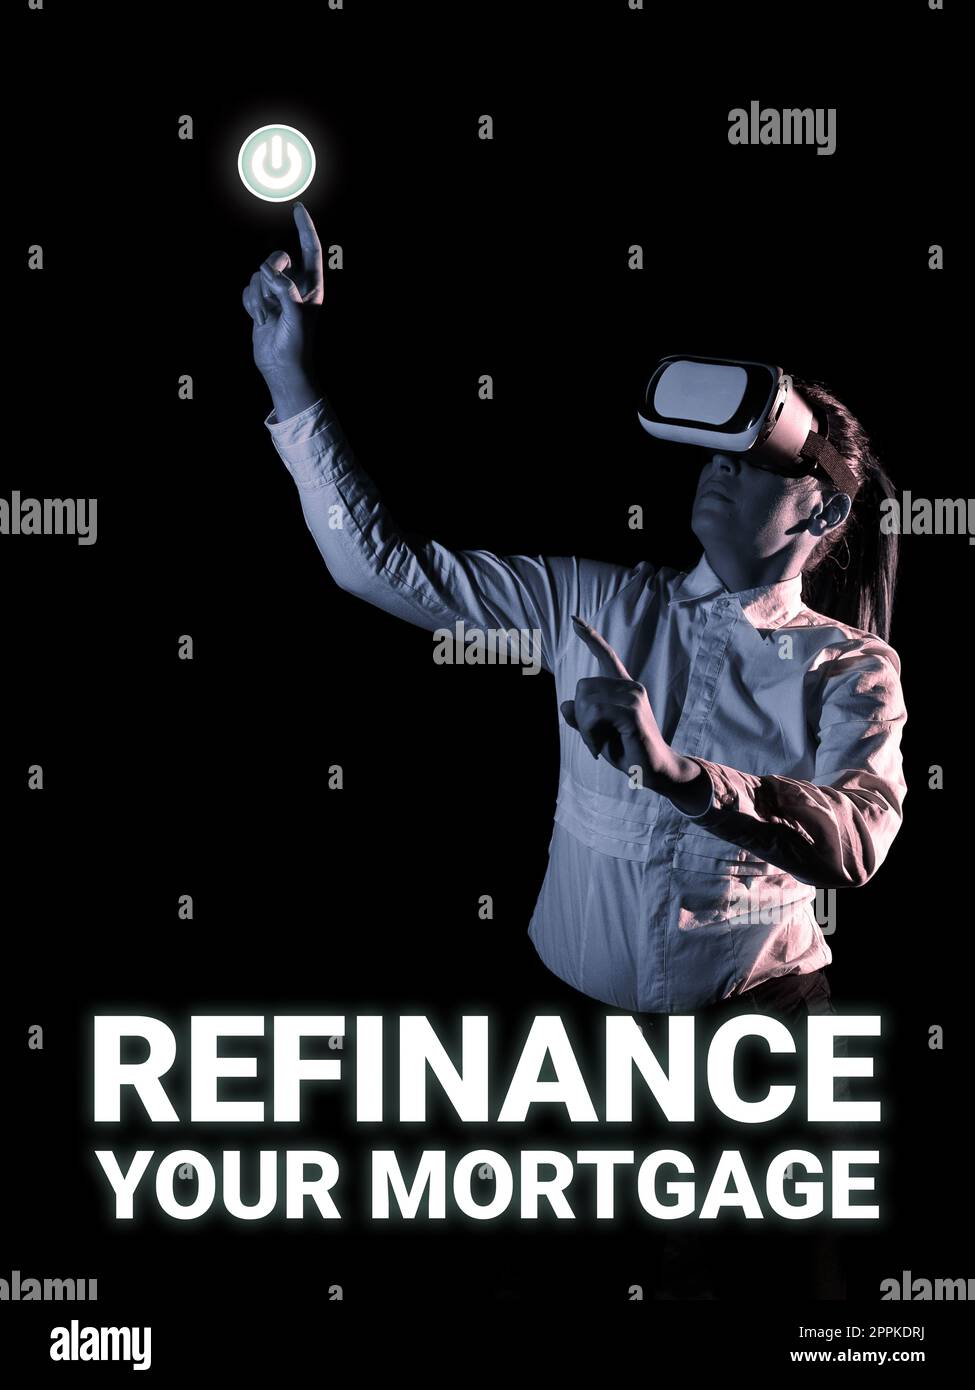 Text mit Inspiration zur Refinanzierung Ihrer Hypothek. Durch die Präsentation von Geschäftsdaten kann der Kreditnehmer bessere Zinskonditionen und Zinssätze erzielen Stockfoto